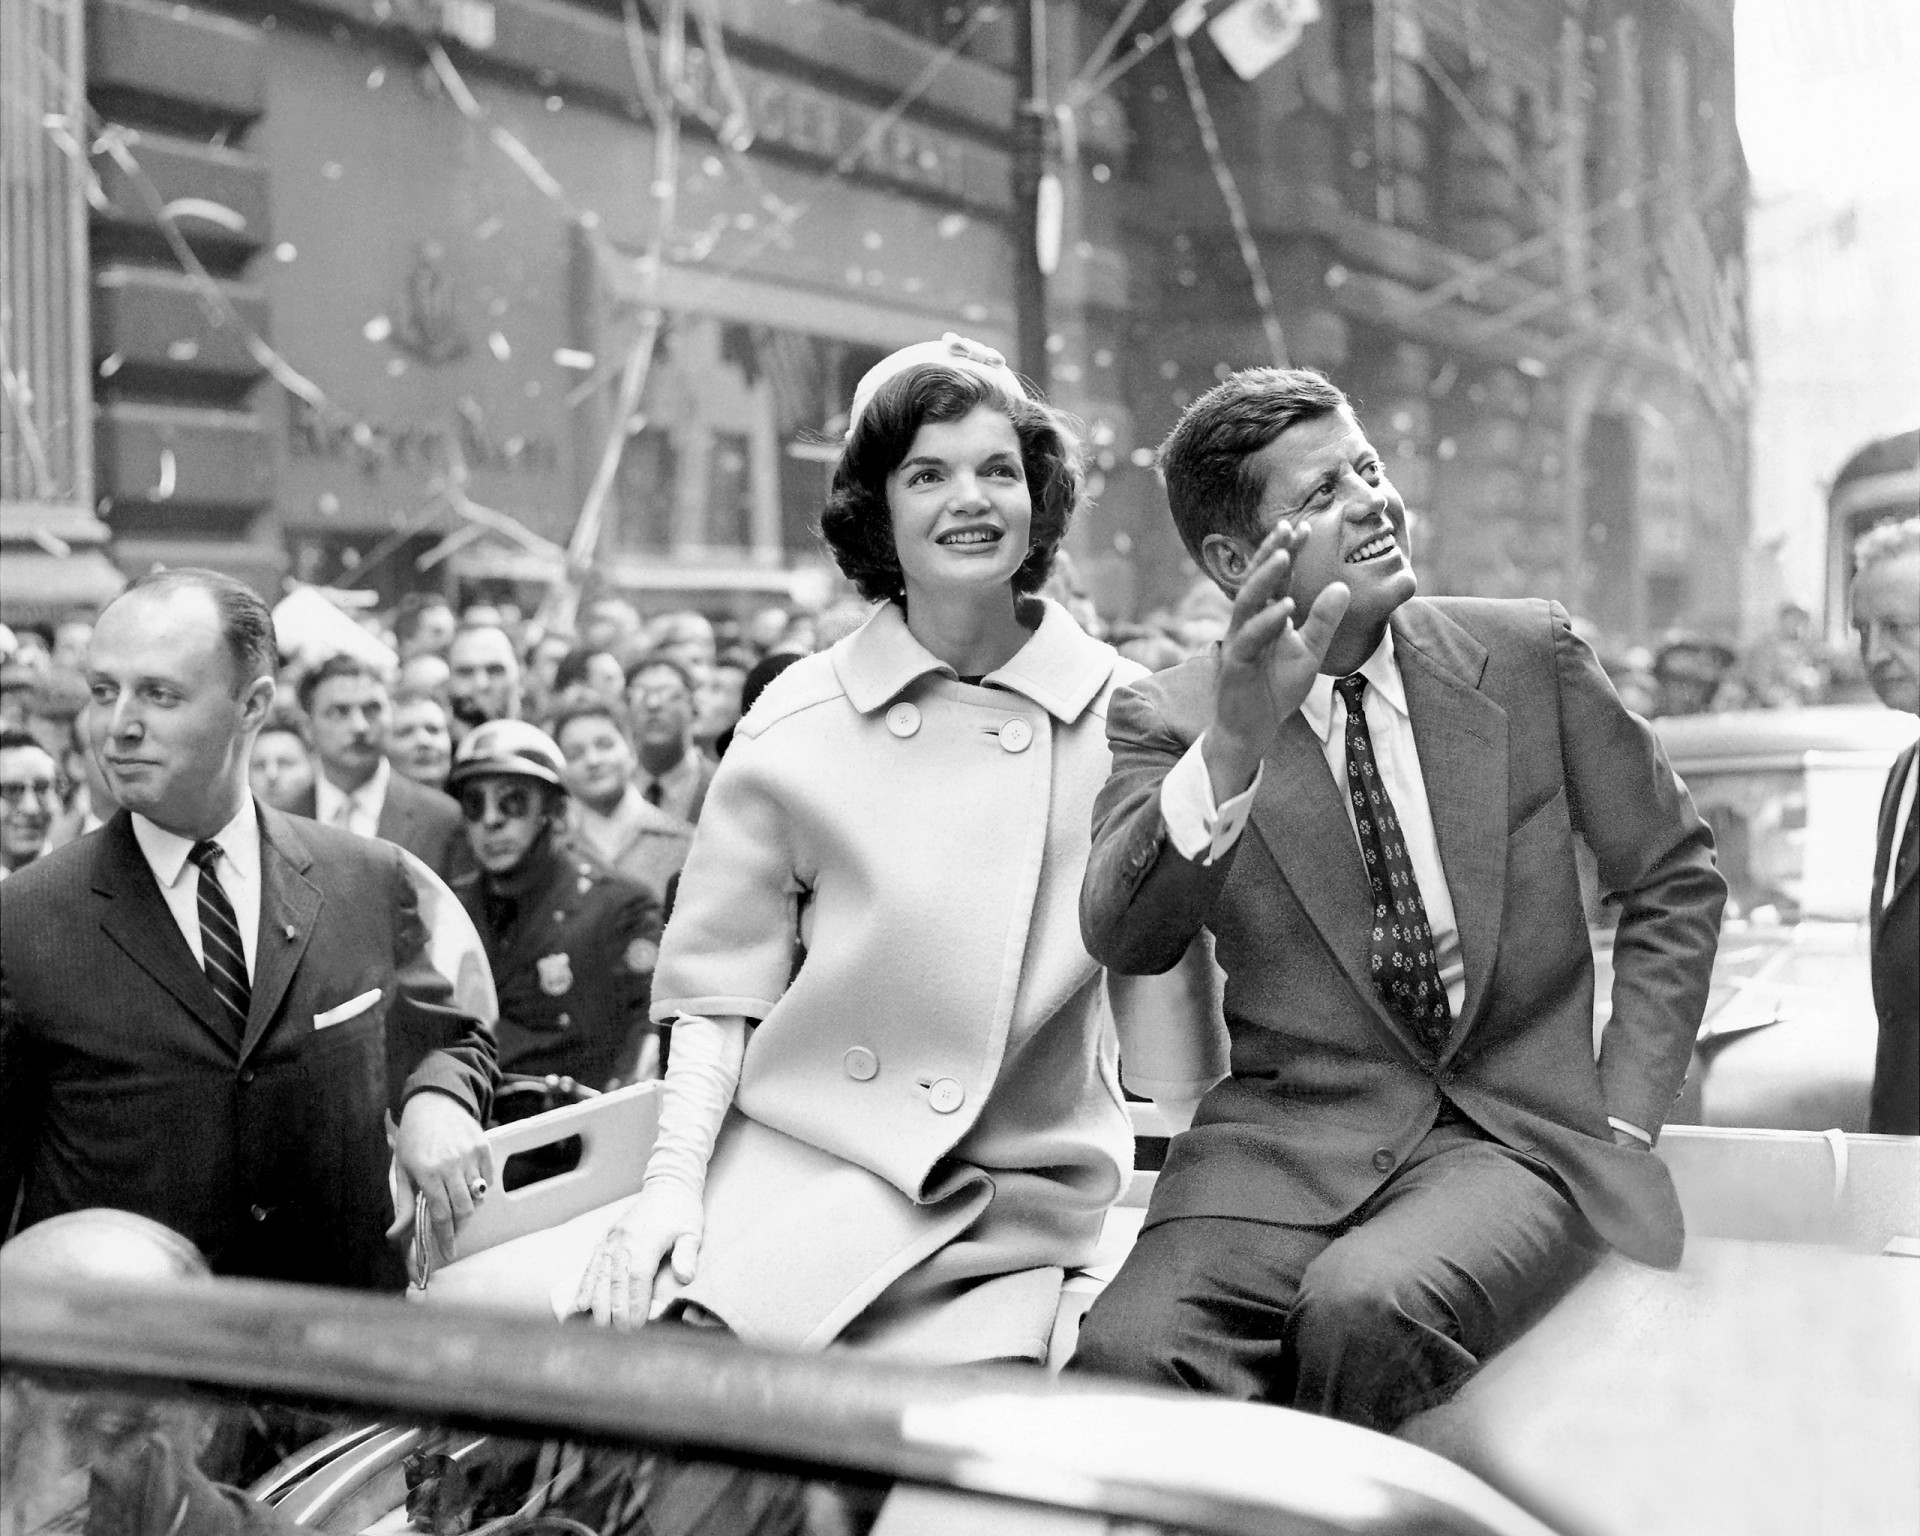 <p>Am 19. Oktober 1960 wird der demokratische Präsidentschaftskandidat JFK und seine Frau Jackie Kennedy mit Konfetti und Luftschlangen in New York City willkommen geheißen.</p><p>Sie können auch mögen:<a href="https://de.starsinsider.com/n/438092?utm_source=msn.com&utm_medium=display&utm_campaign=referral_description&utm_content=689702"> Welche Ihrer Kindheitserinnerungen haben eigentlich verstörende Hintergründe?</a></p>